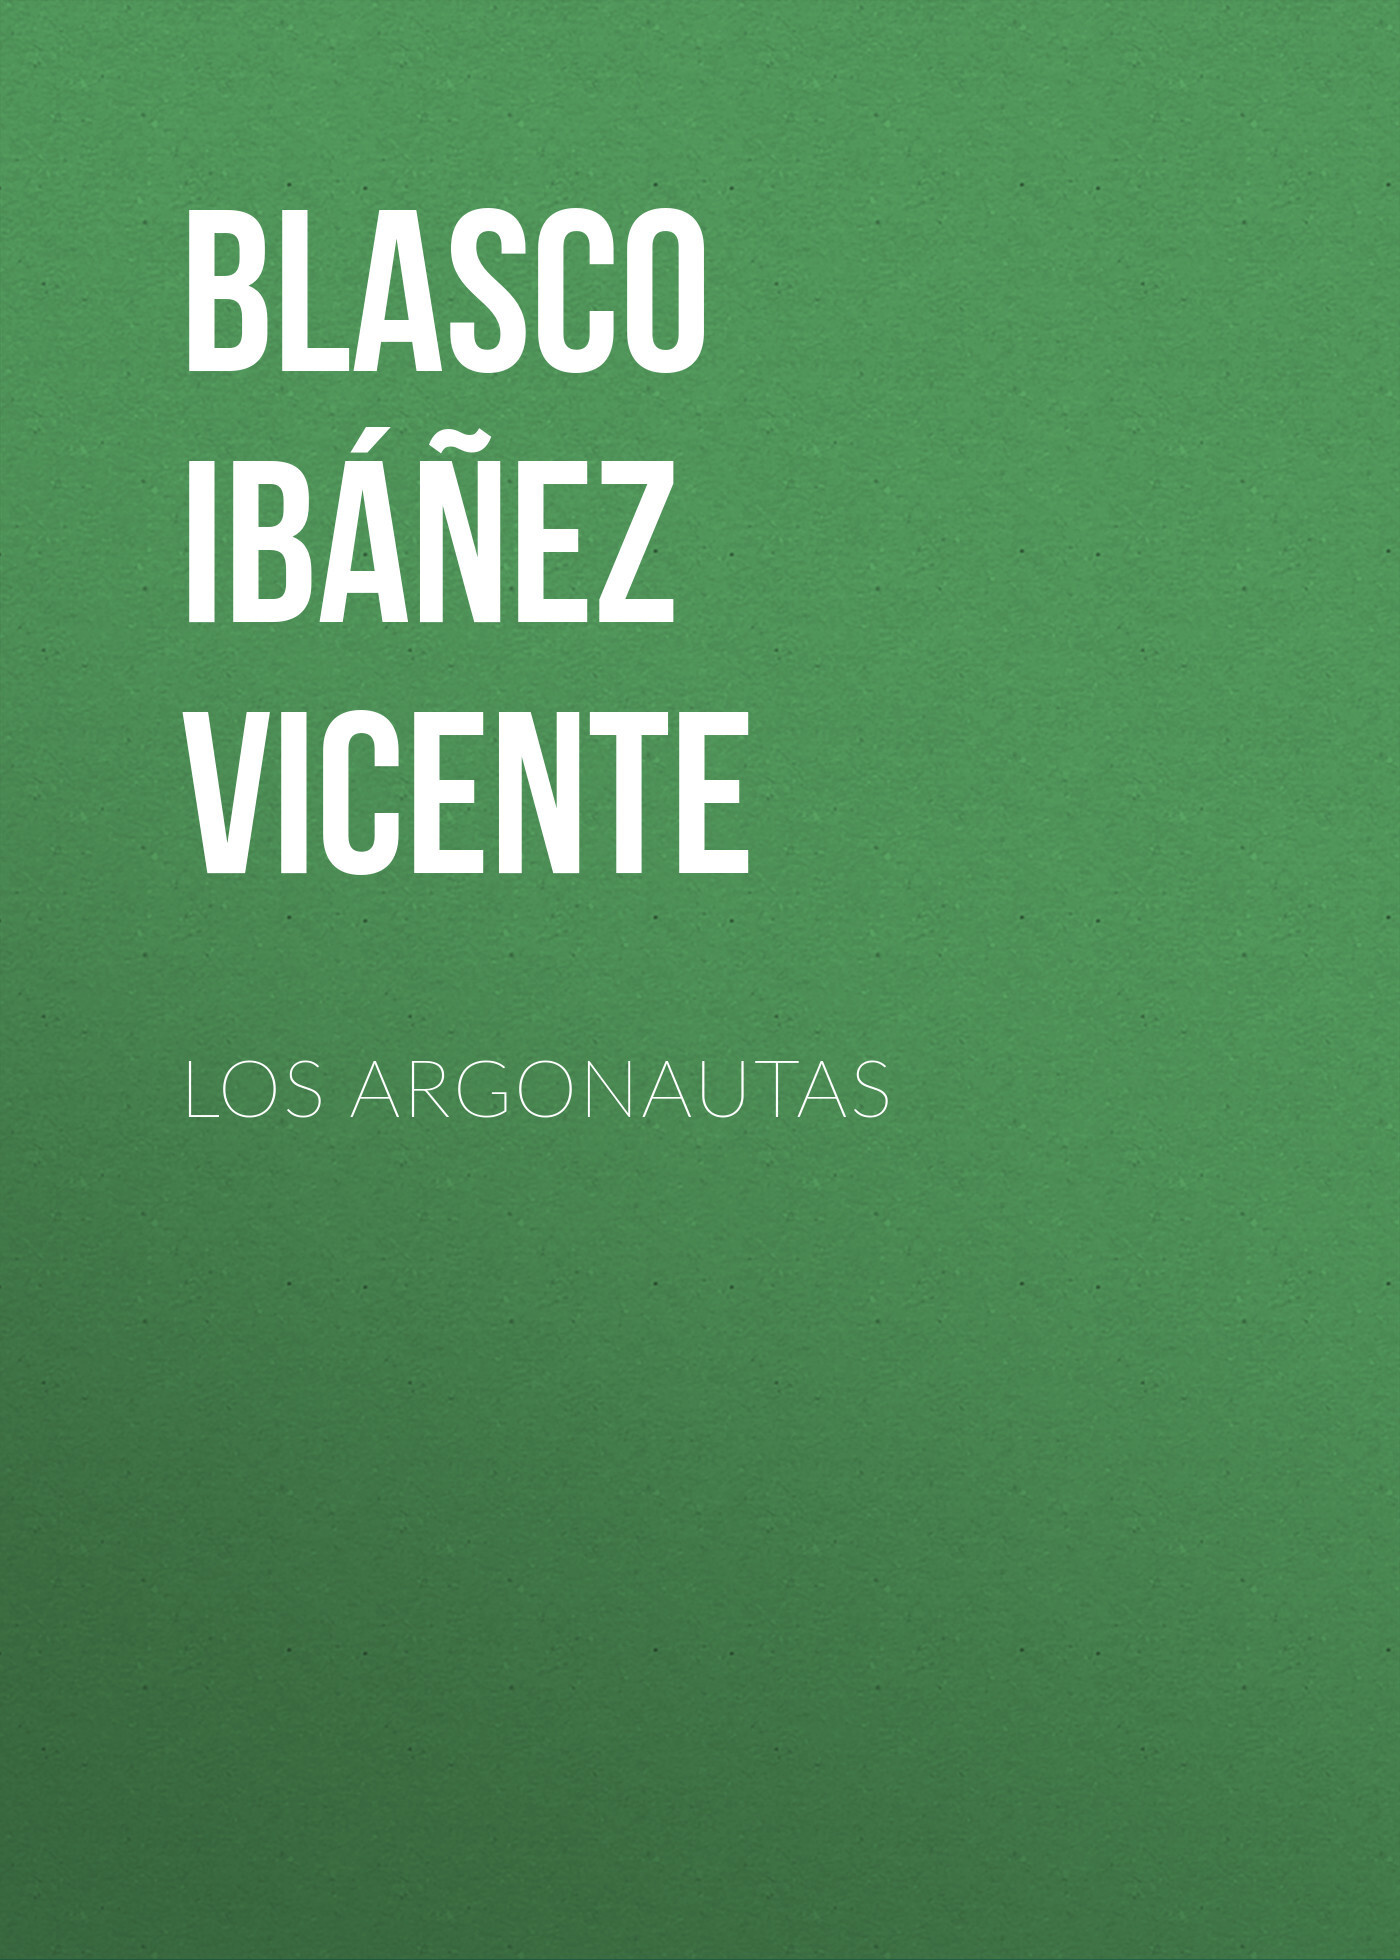 Книга Los argonautas из серии , созданная Vicente Blasco Ibáñez, может относится к жанру Зарубежная классика, Зарубежная старинная литература. Стоимость электронной книги Los argonautas с идентификатором 36365374 составляет 0 руб.